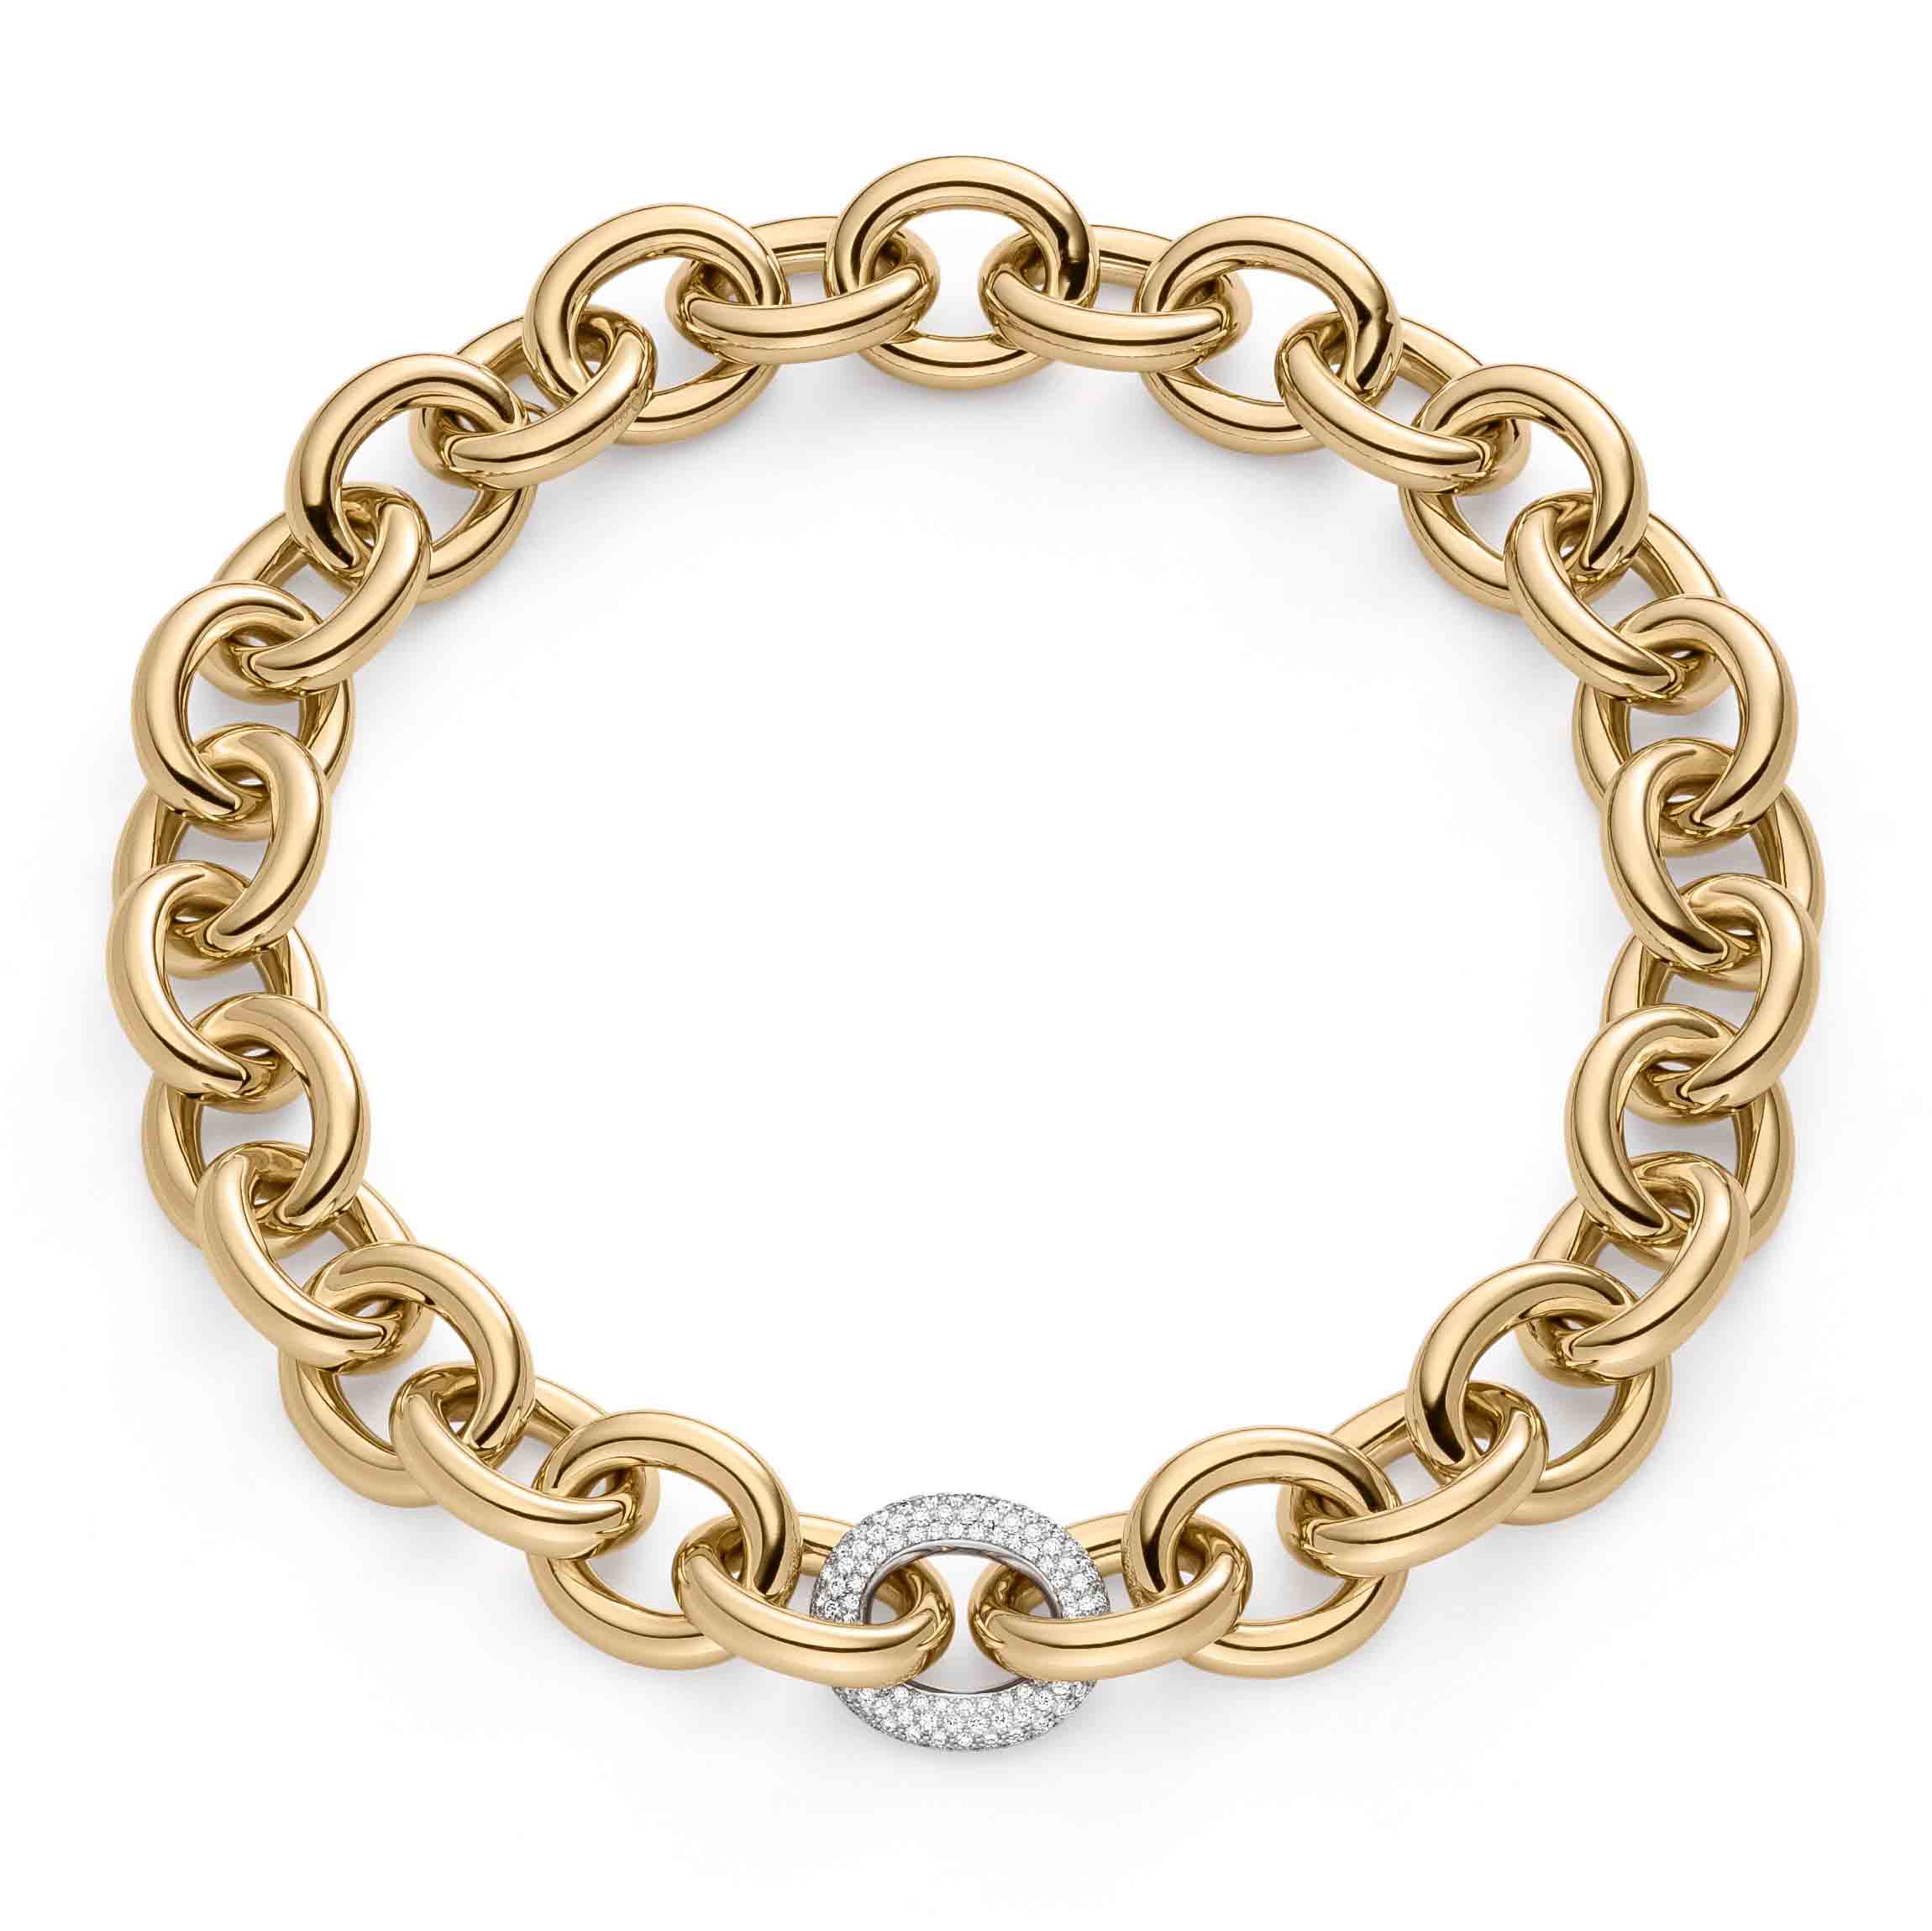 Fornitori all'ingrosso di braccialetti in argento per gioielli OEM / ODM OEM di gioielli placcati in oro 18 carati